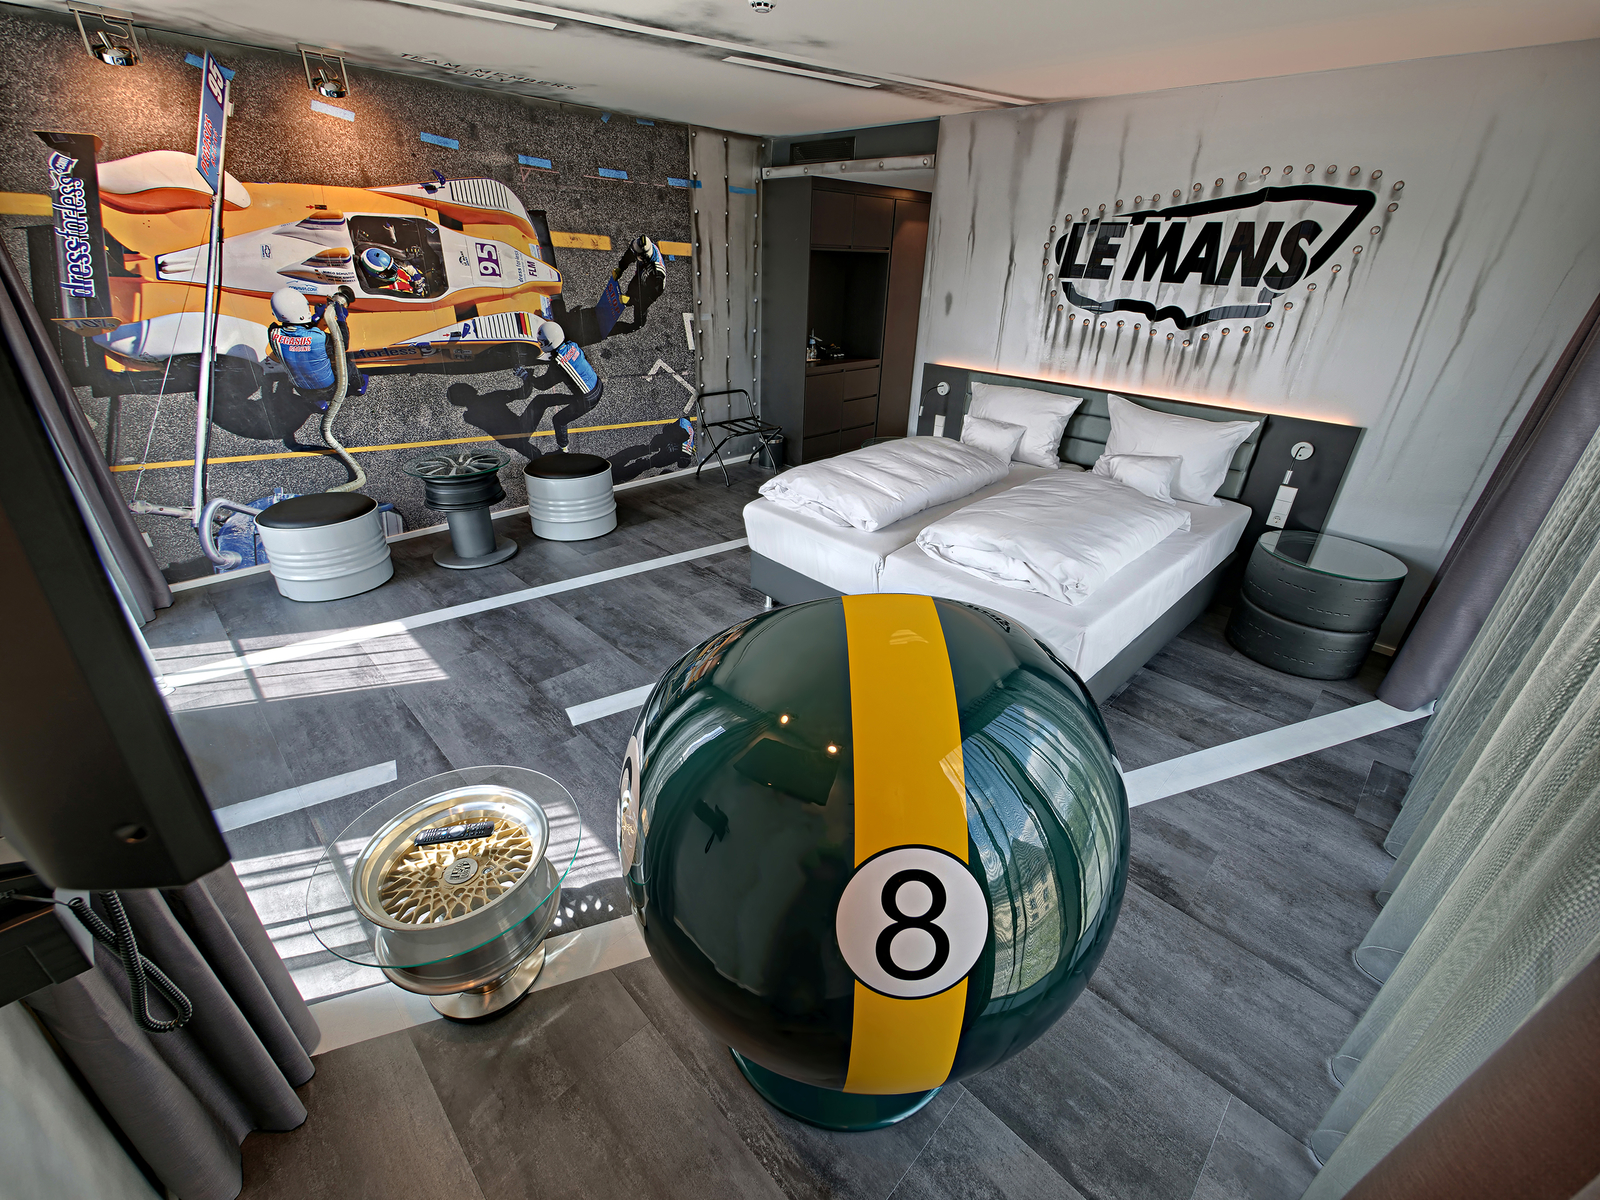 Autozimmer Le Mans mit Motivtape, die ein Rennauto zeigt, gegenüber eines grünen Sessels und eines Doppelbetts.